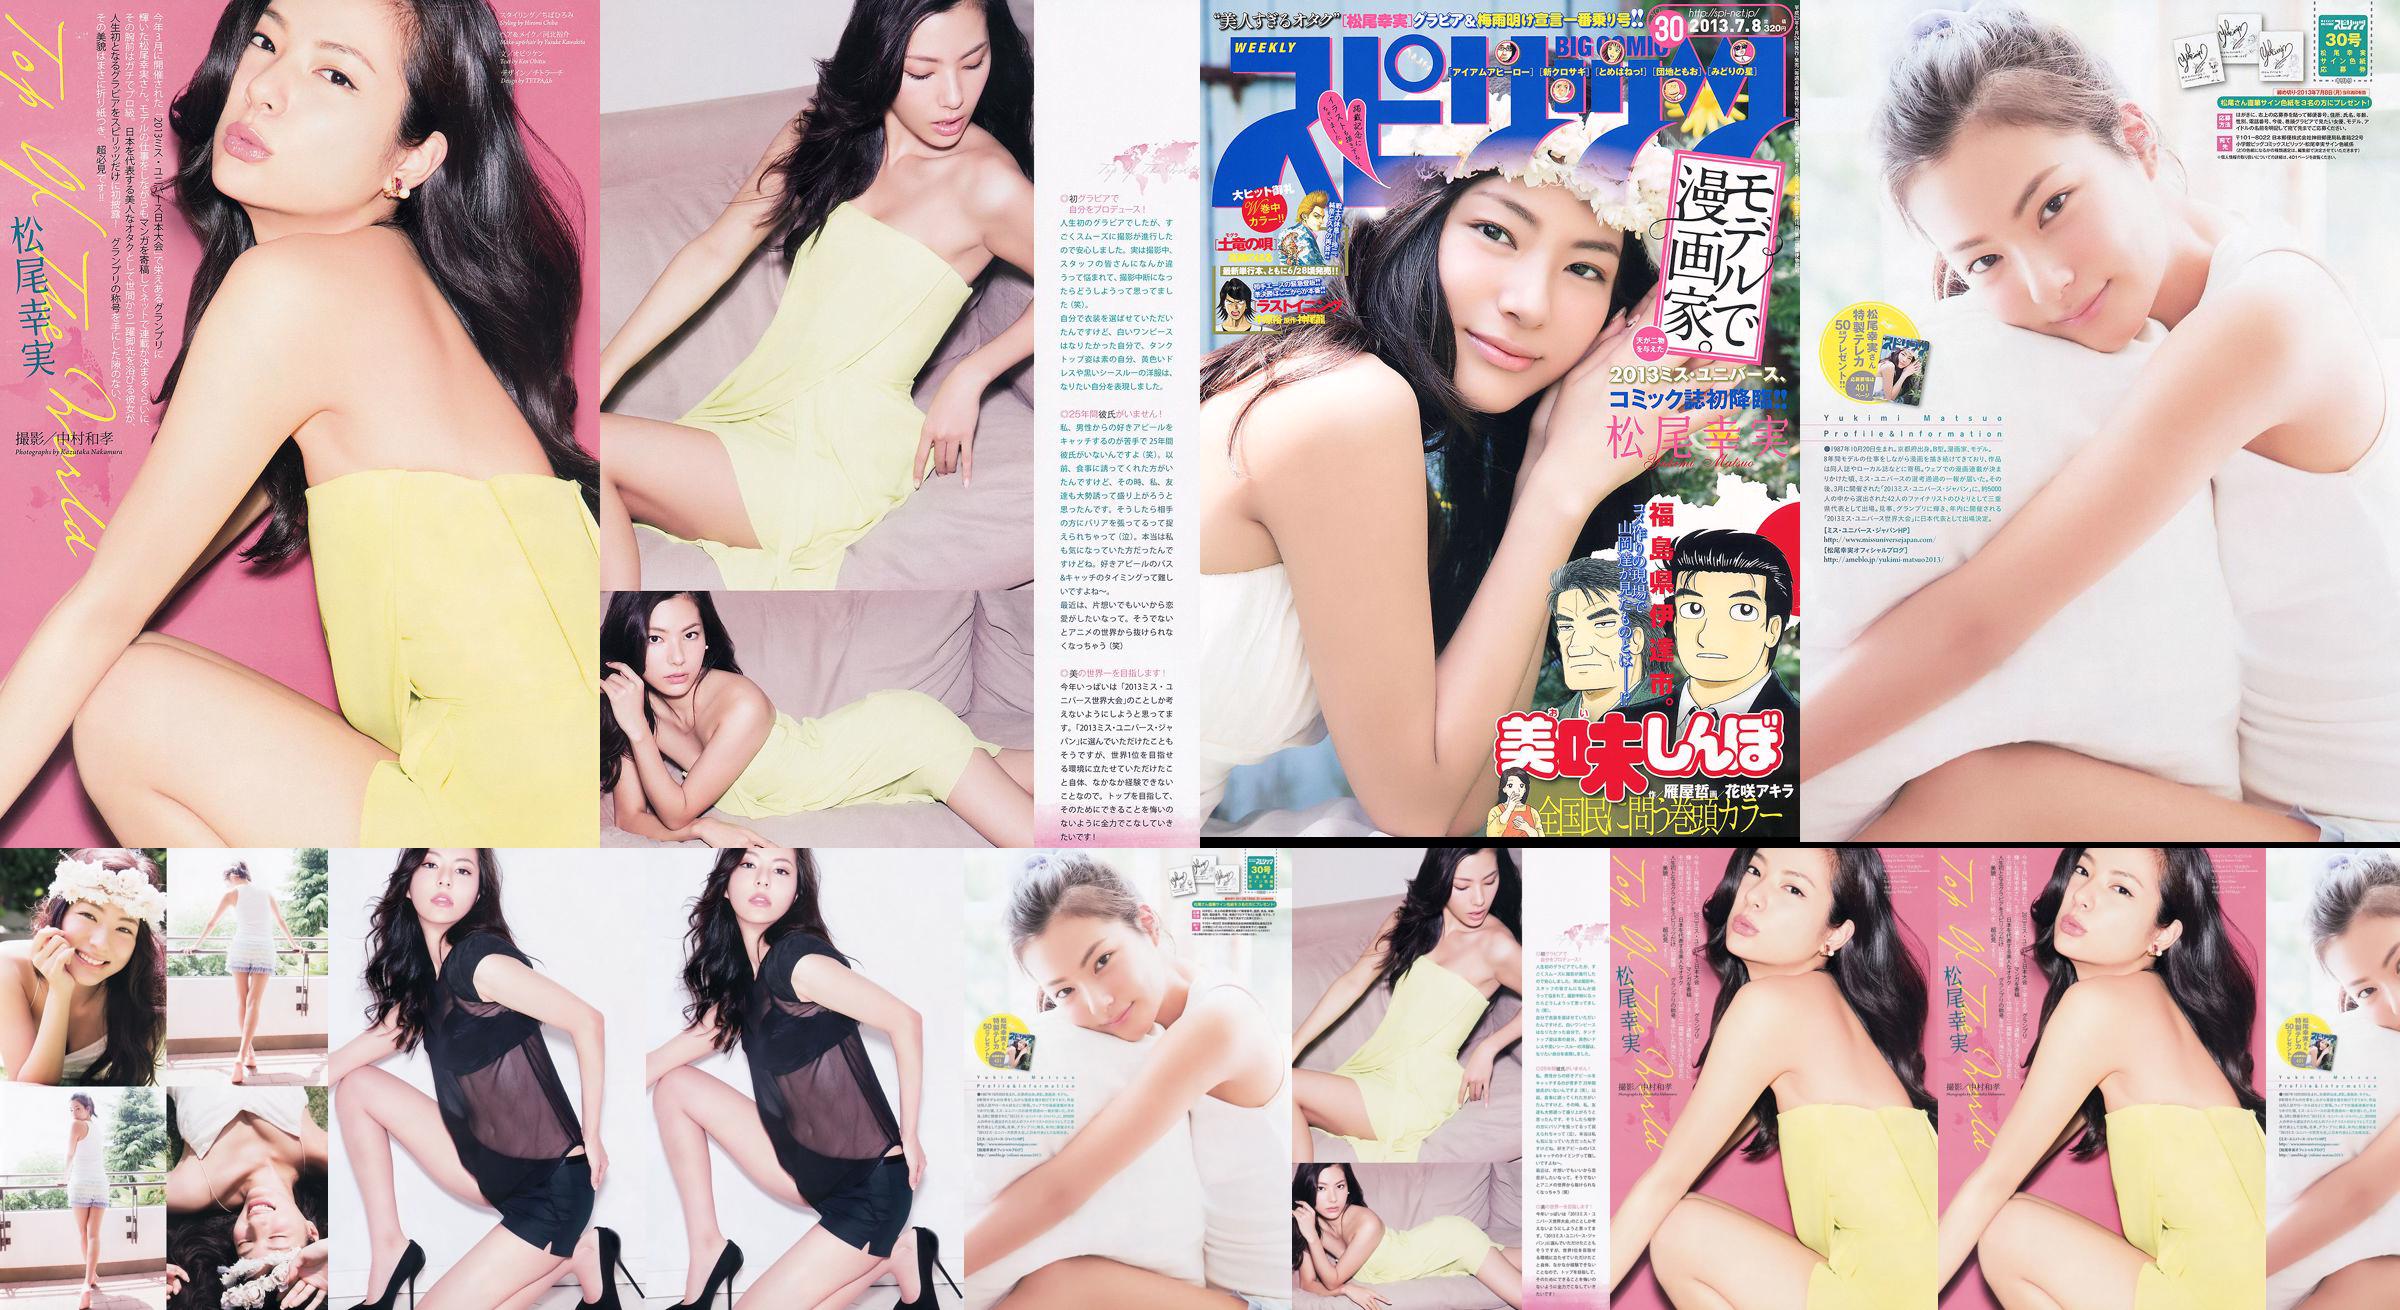 [Weekly Big Comic Spirits] Komi Matsuo 2013 No.30 Photo Magazine No.066be2 หน้า 1